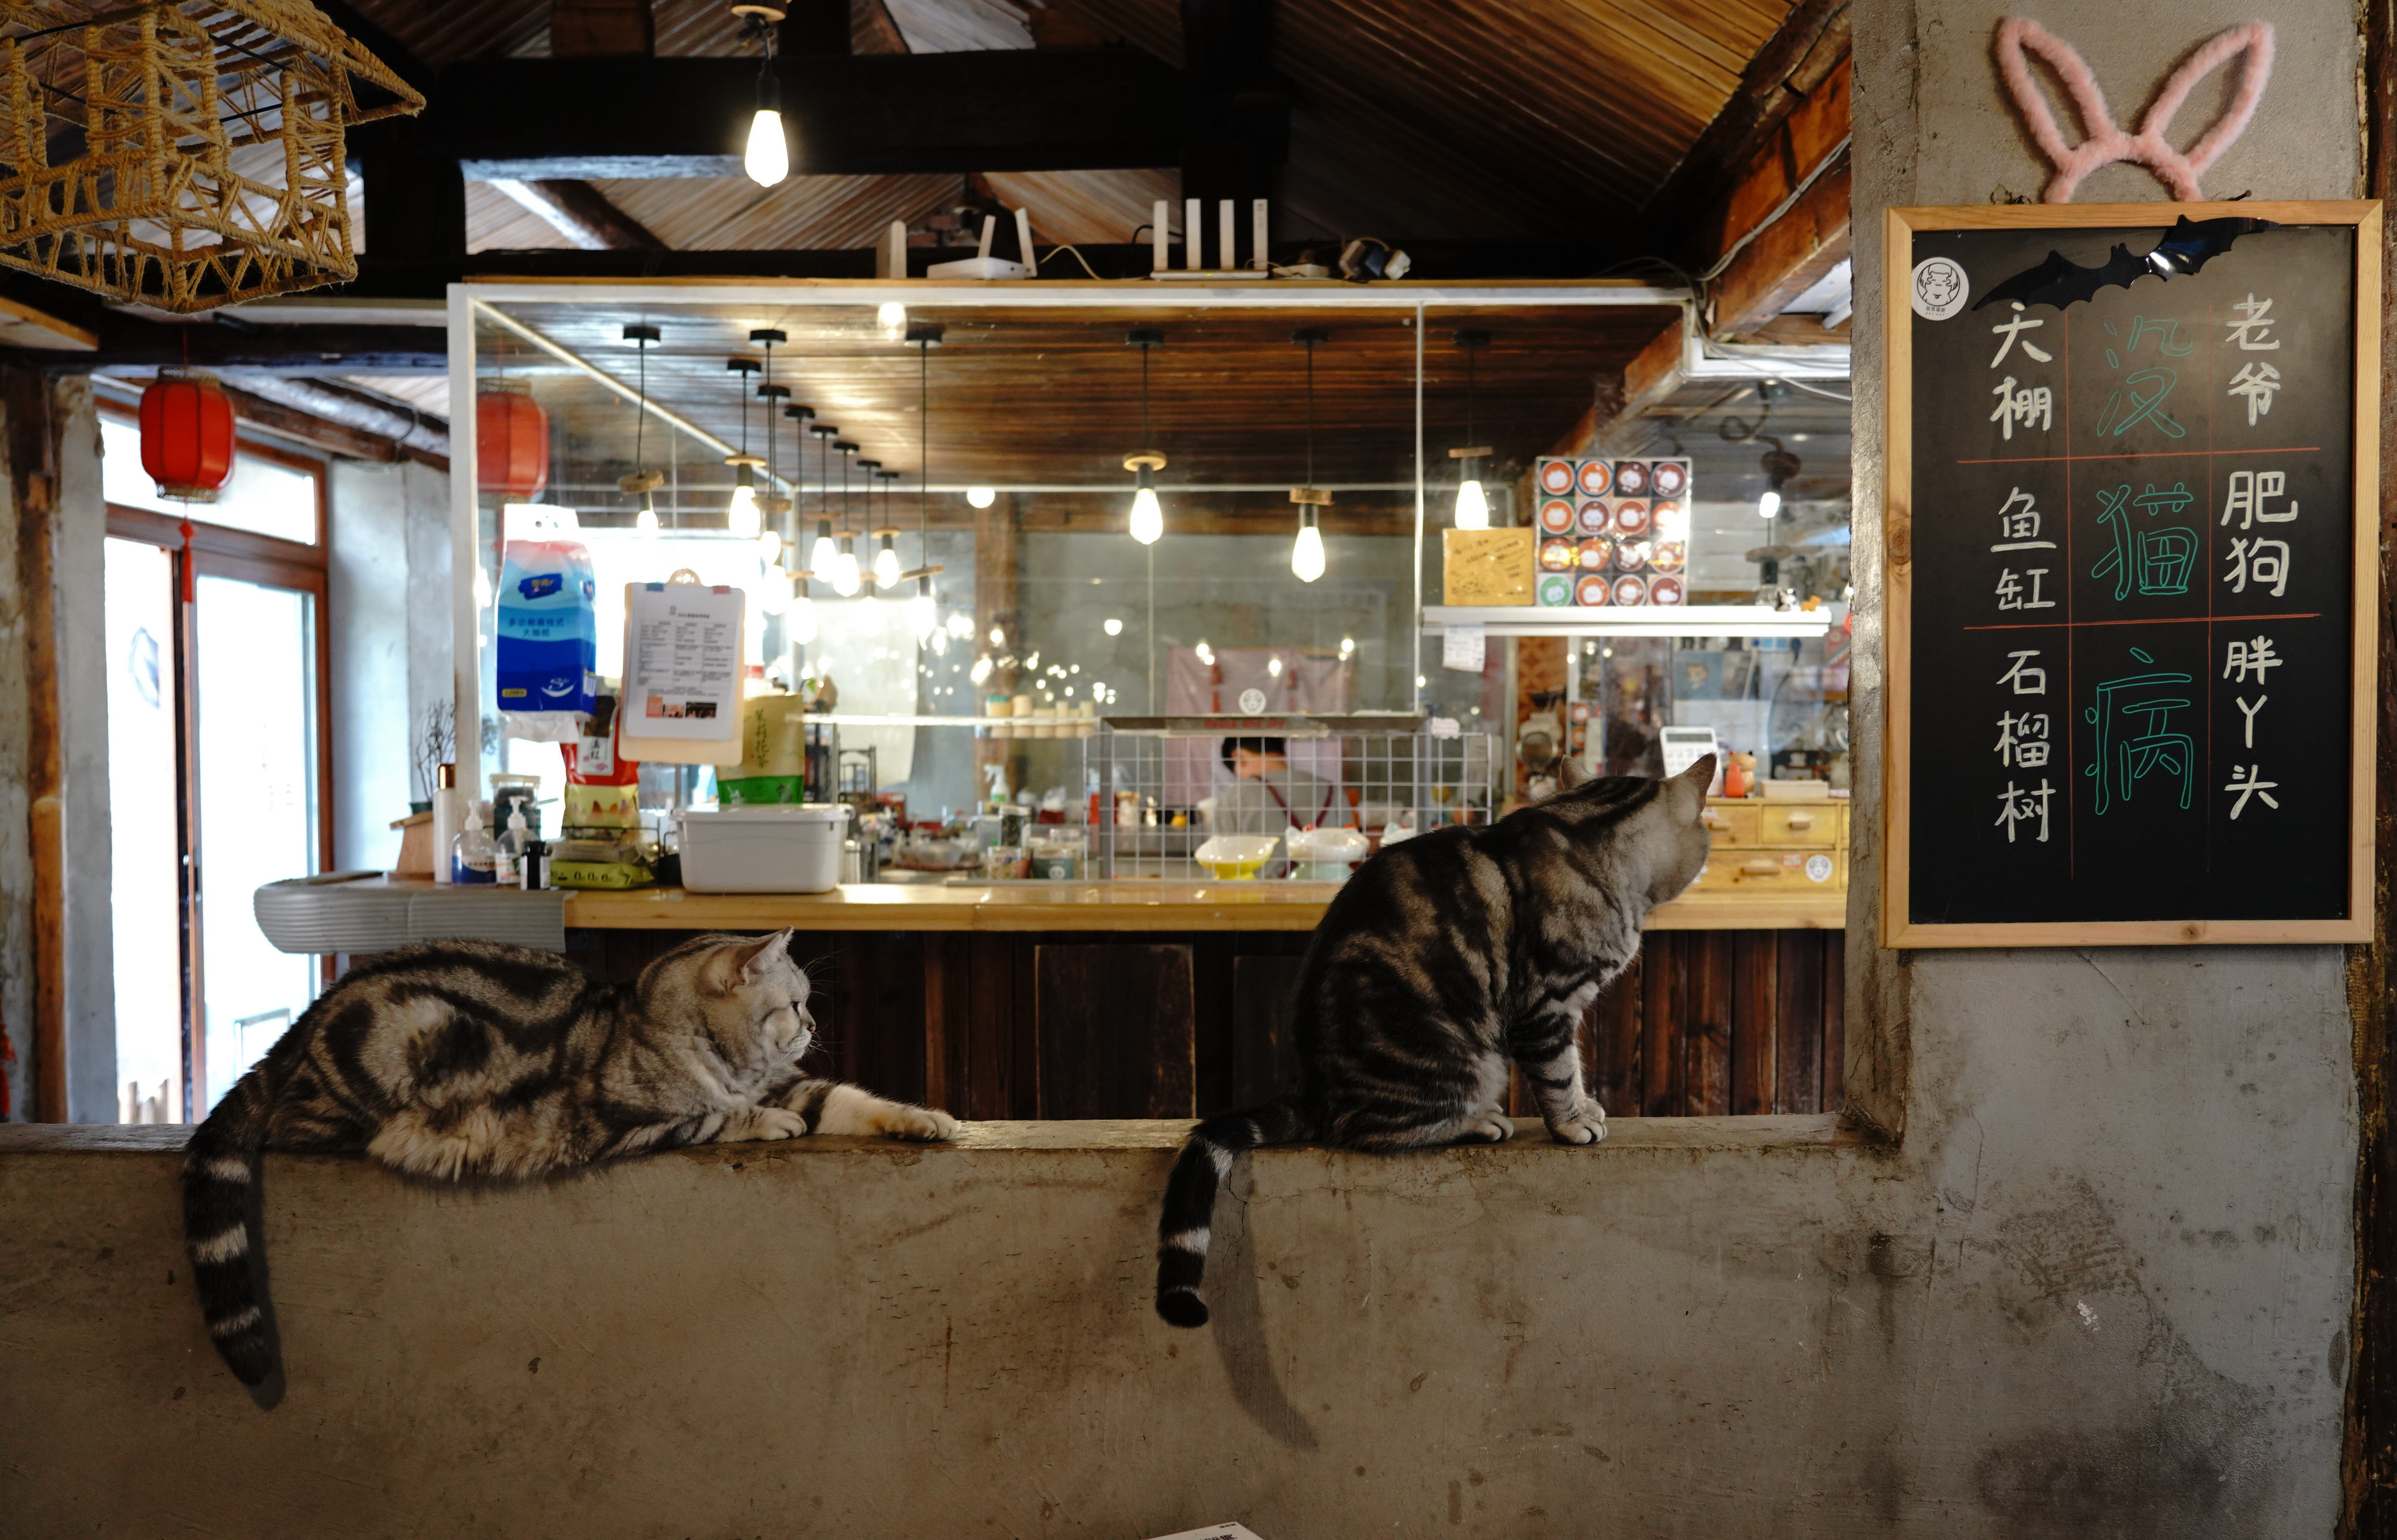 (图片故事)把兴趣变成事业——猫咖创业者和她的37只猫